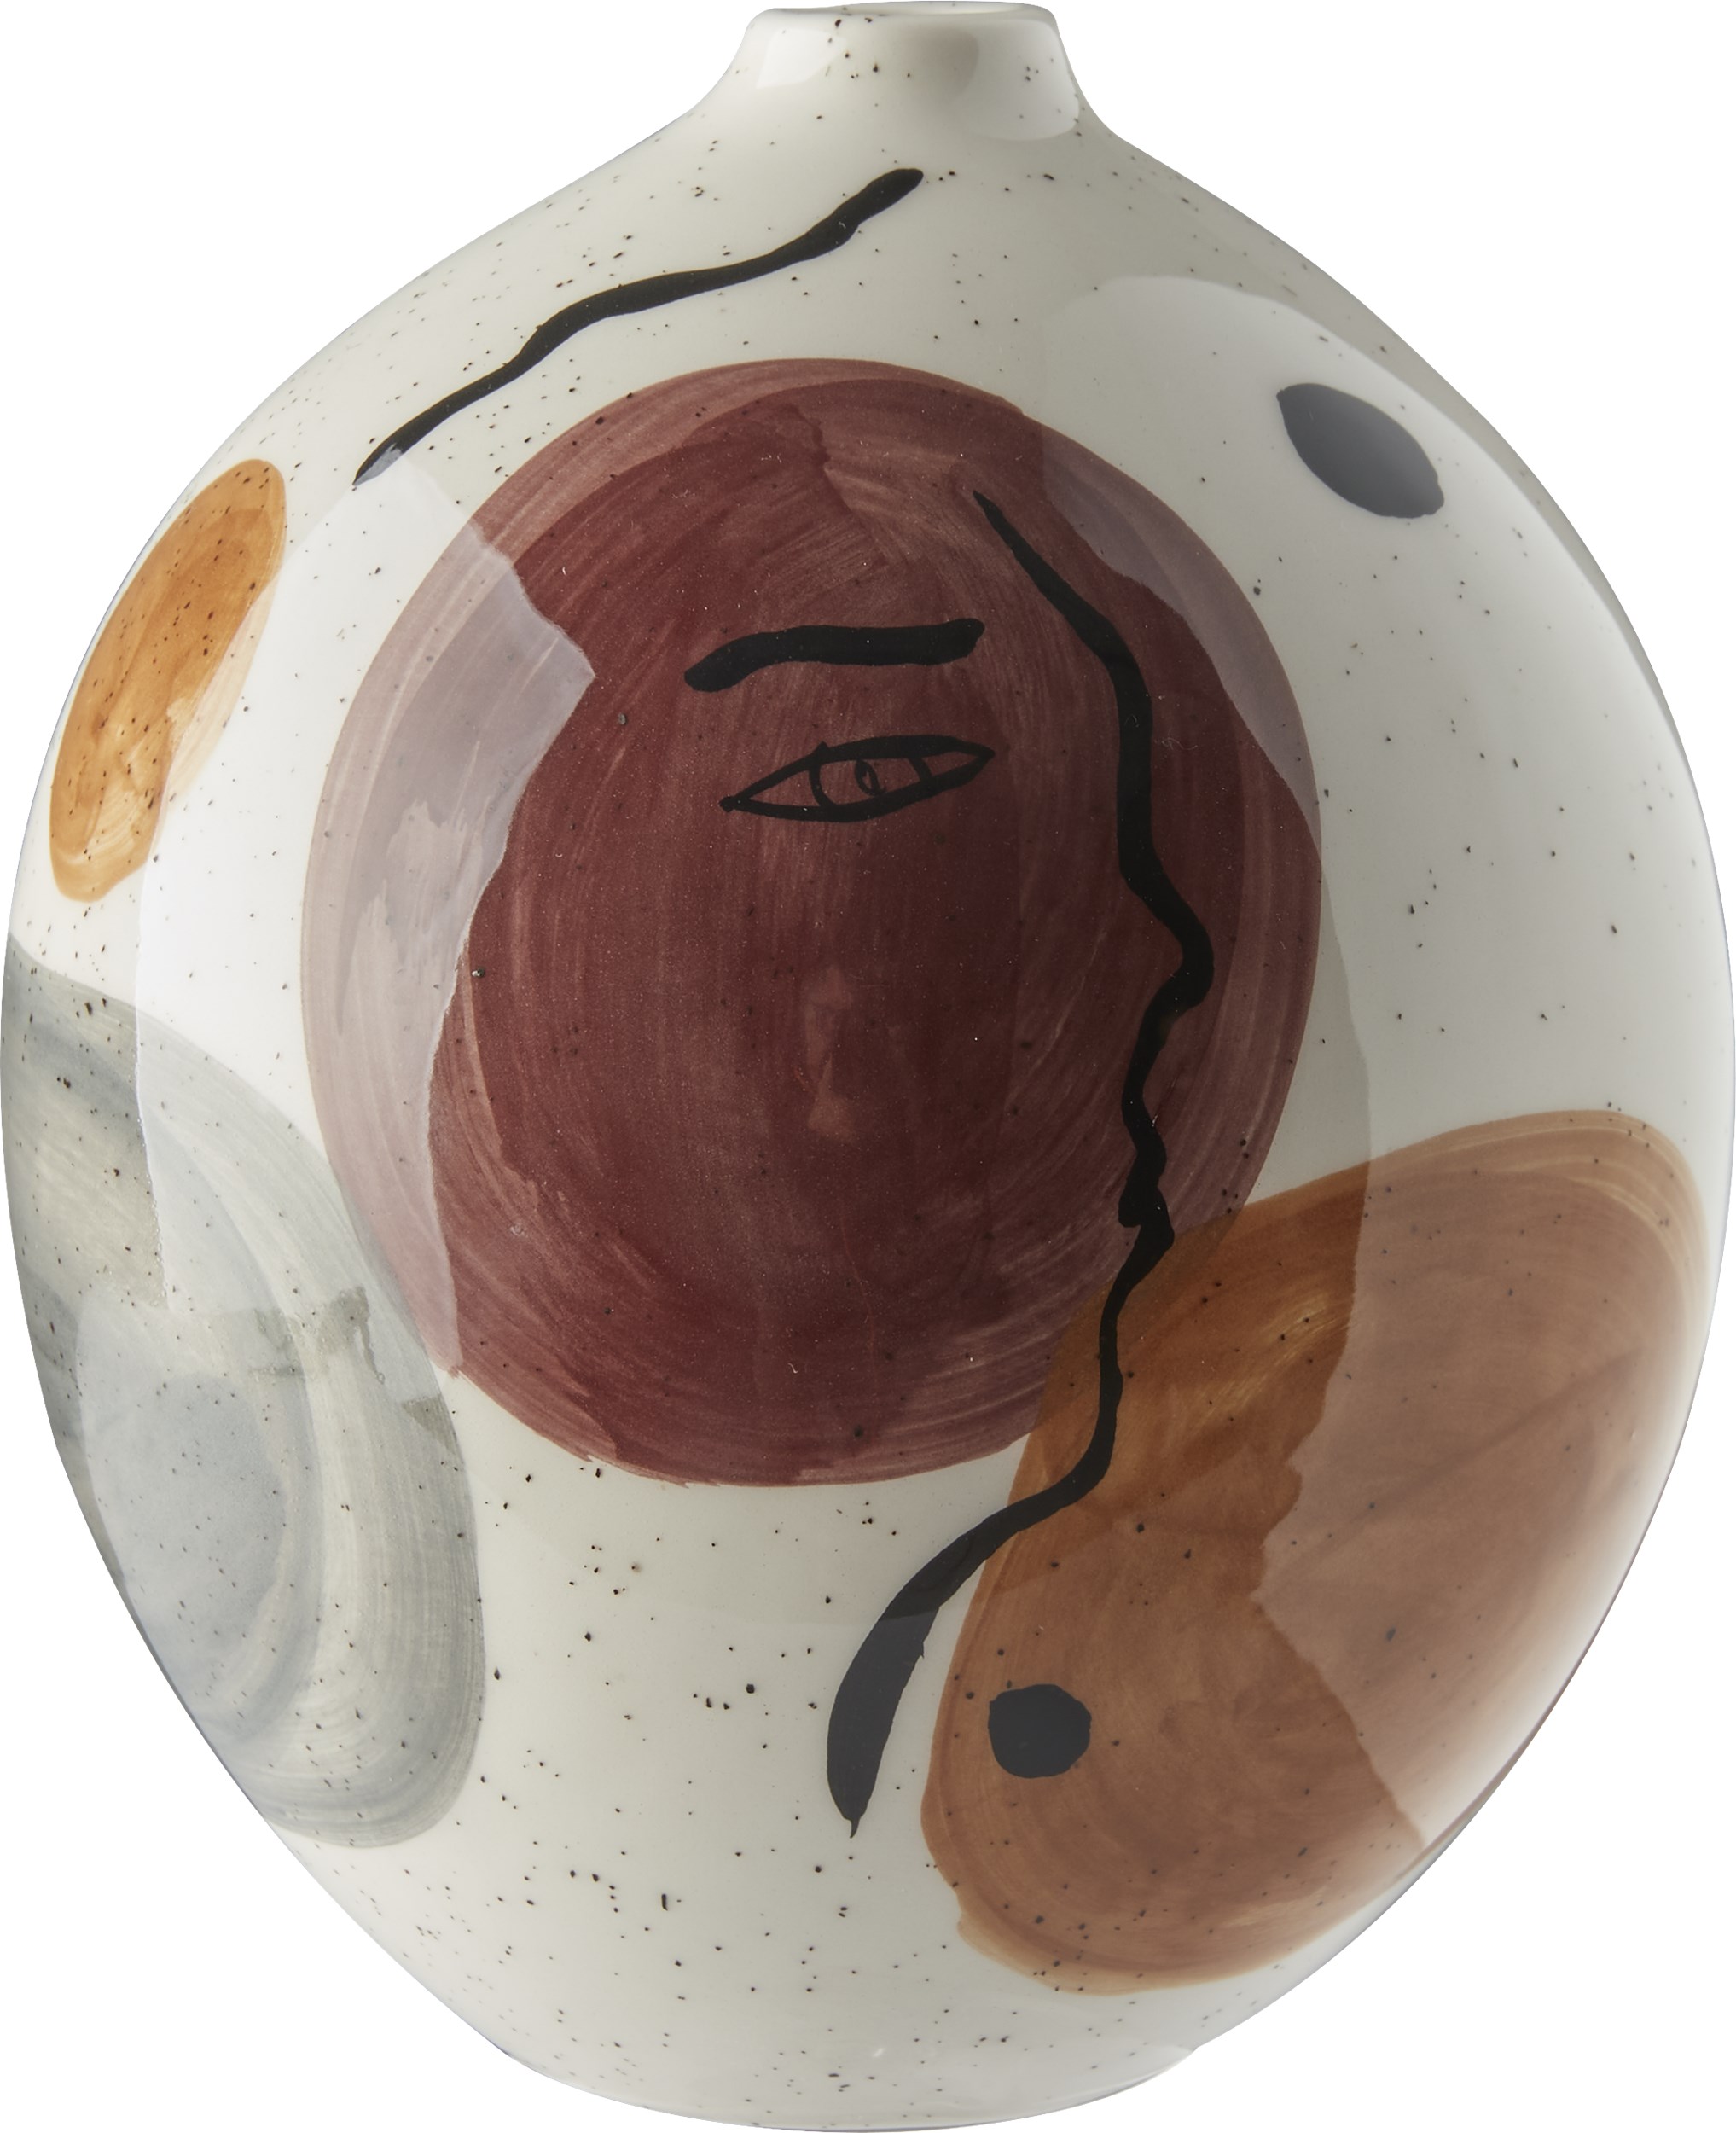 Hera vas 21 x 18 cm - Lergods, offwhite/vinröd, ockra och grå och med prickar och ansikte